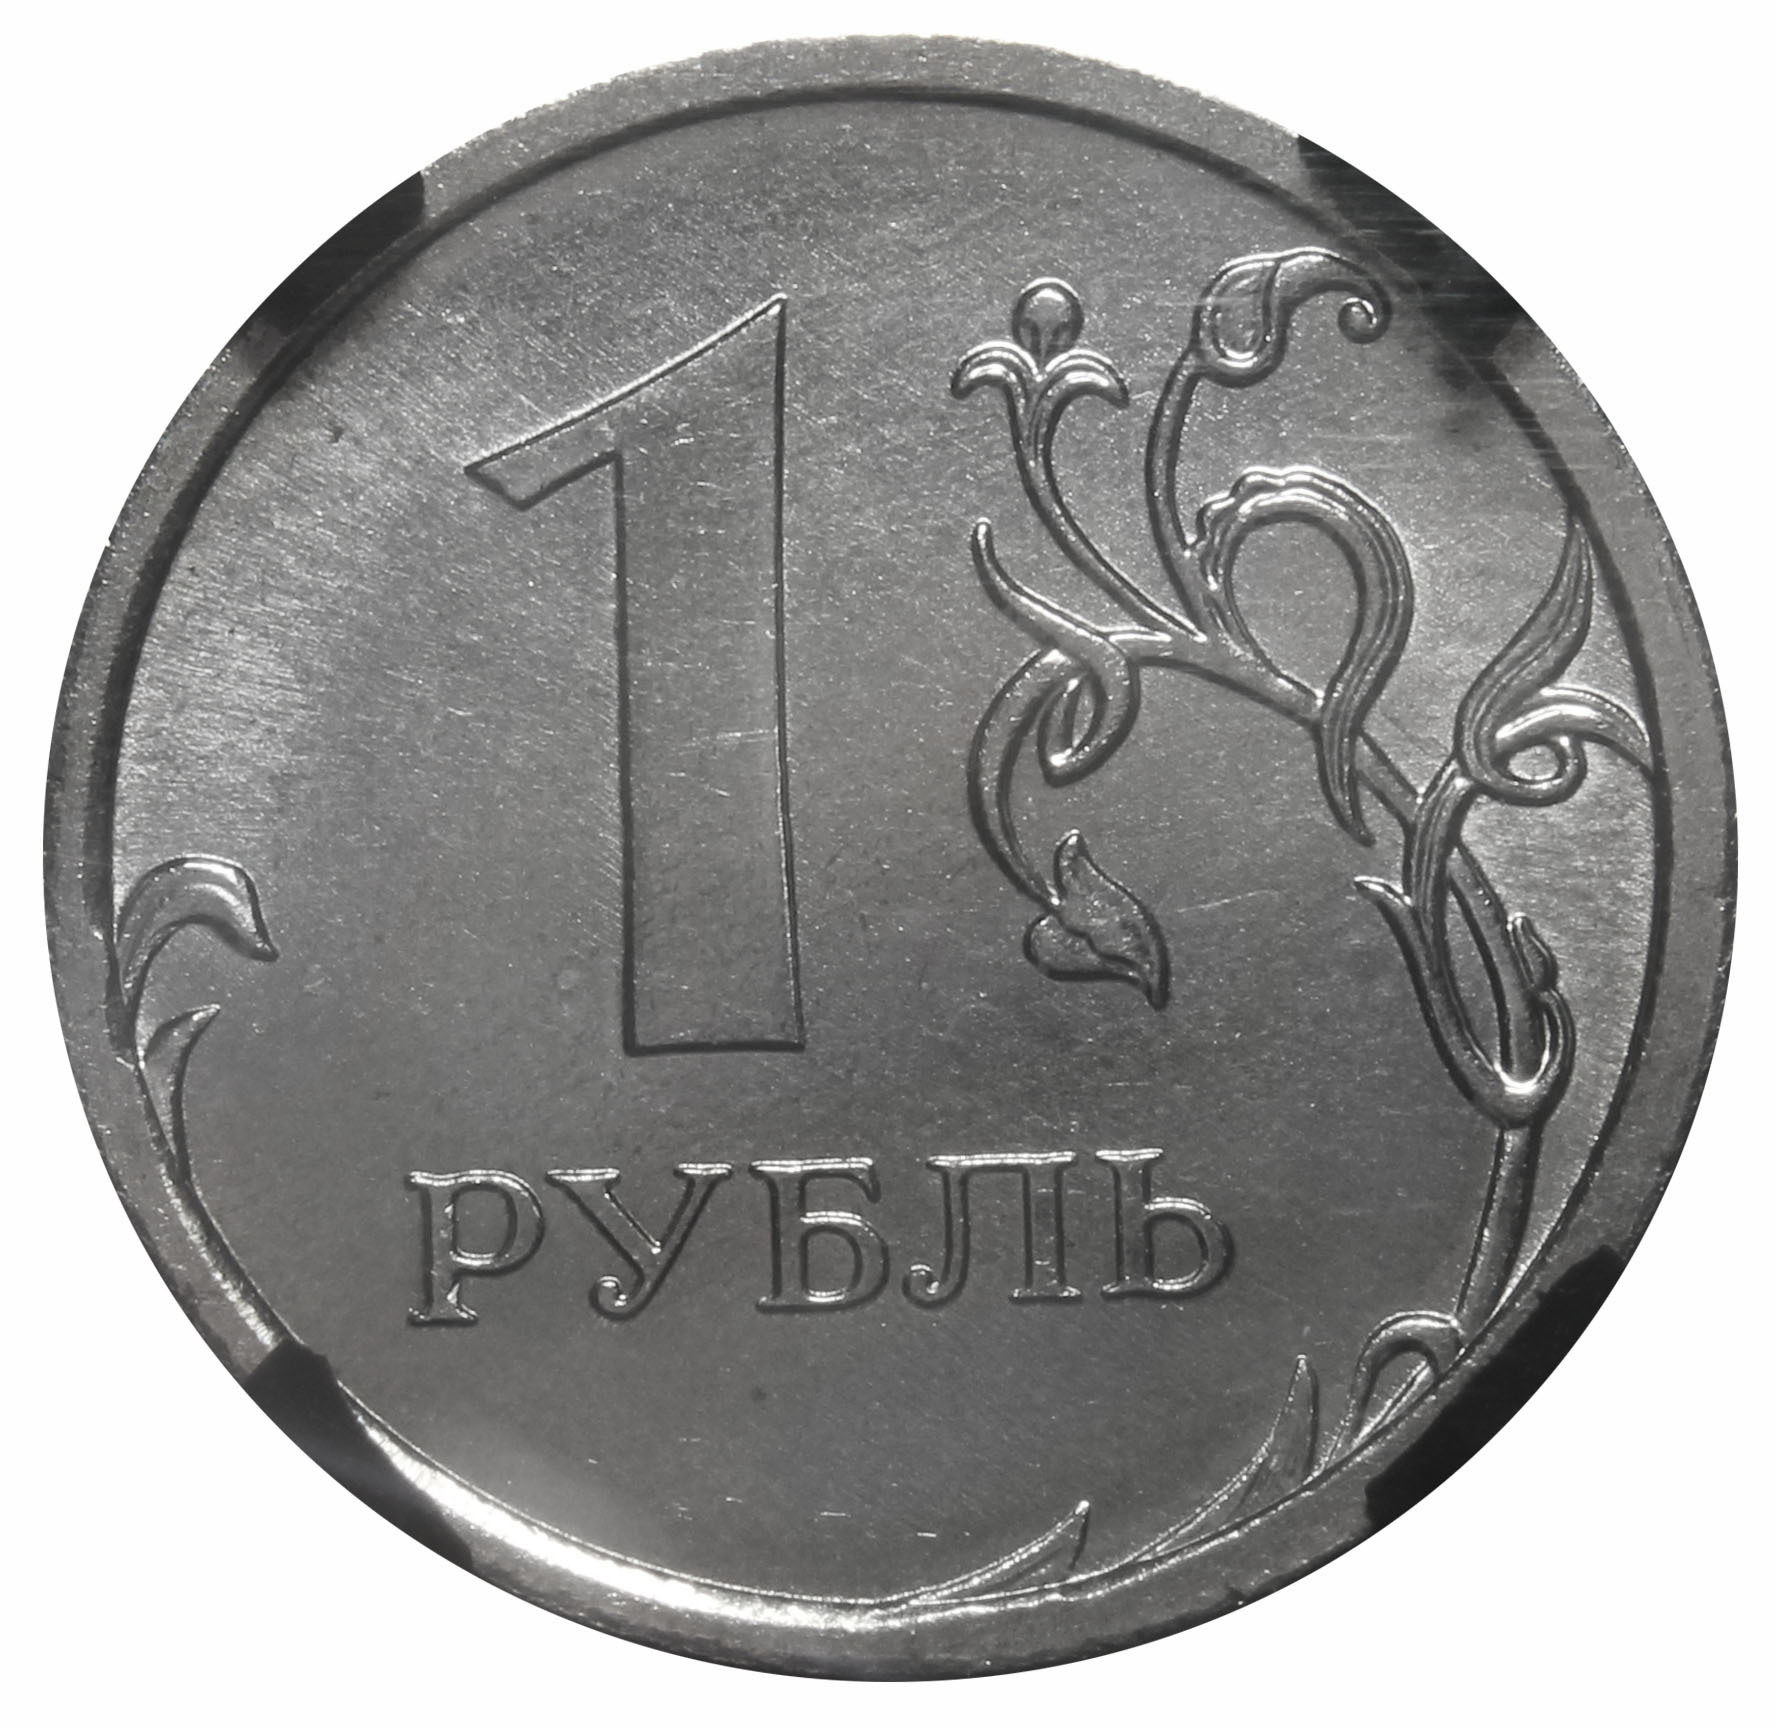 1 руб равно. 1 Рубль. Монеты рубли. Монета 1 руб. Изображение монеты 1 рубль.